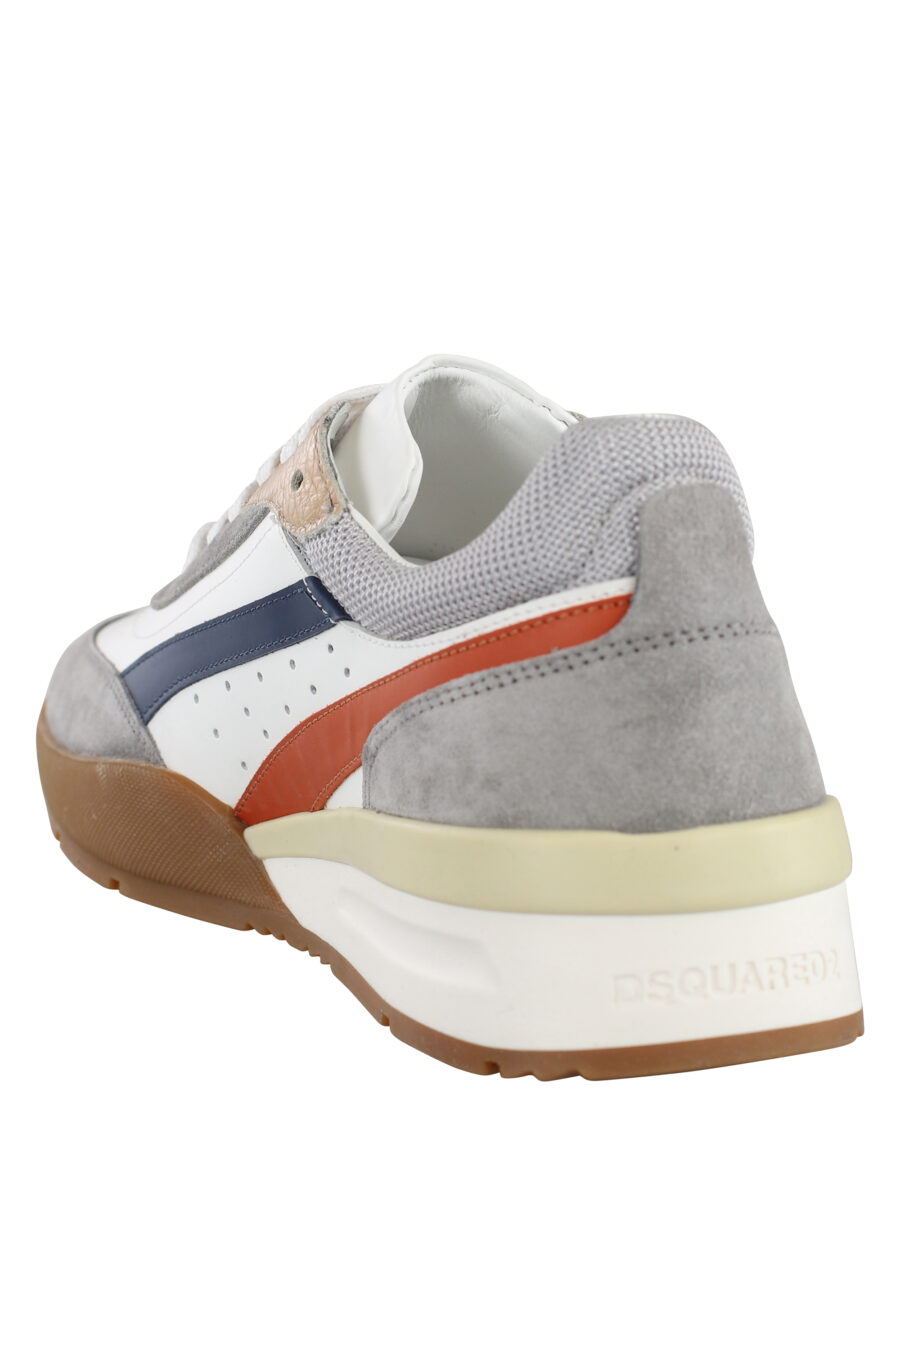 Zapatillas blancas y grises con detalles multicolor y suela marrón - IMG 7150